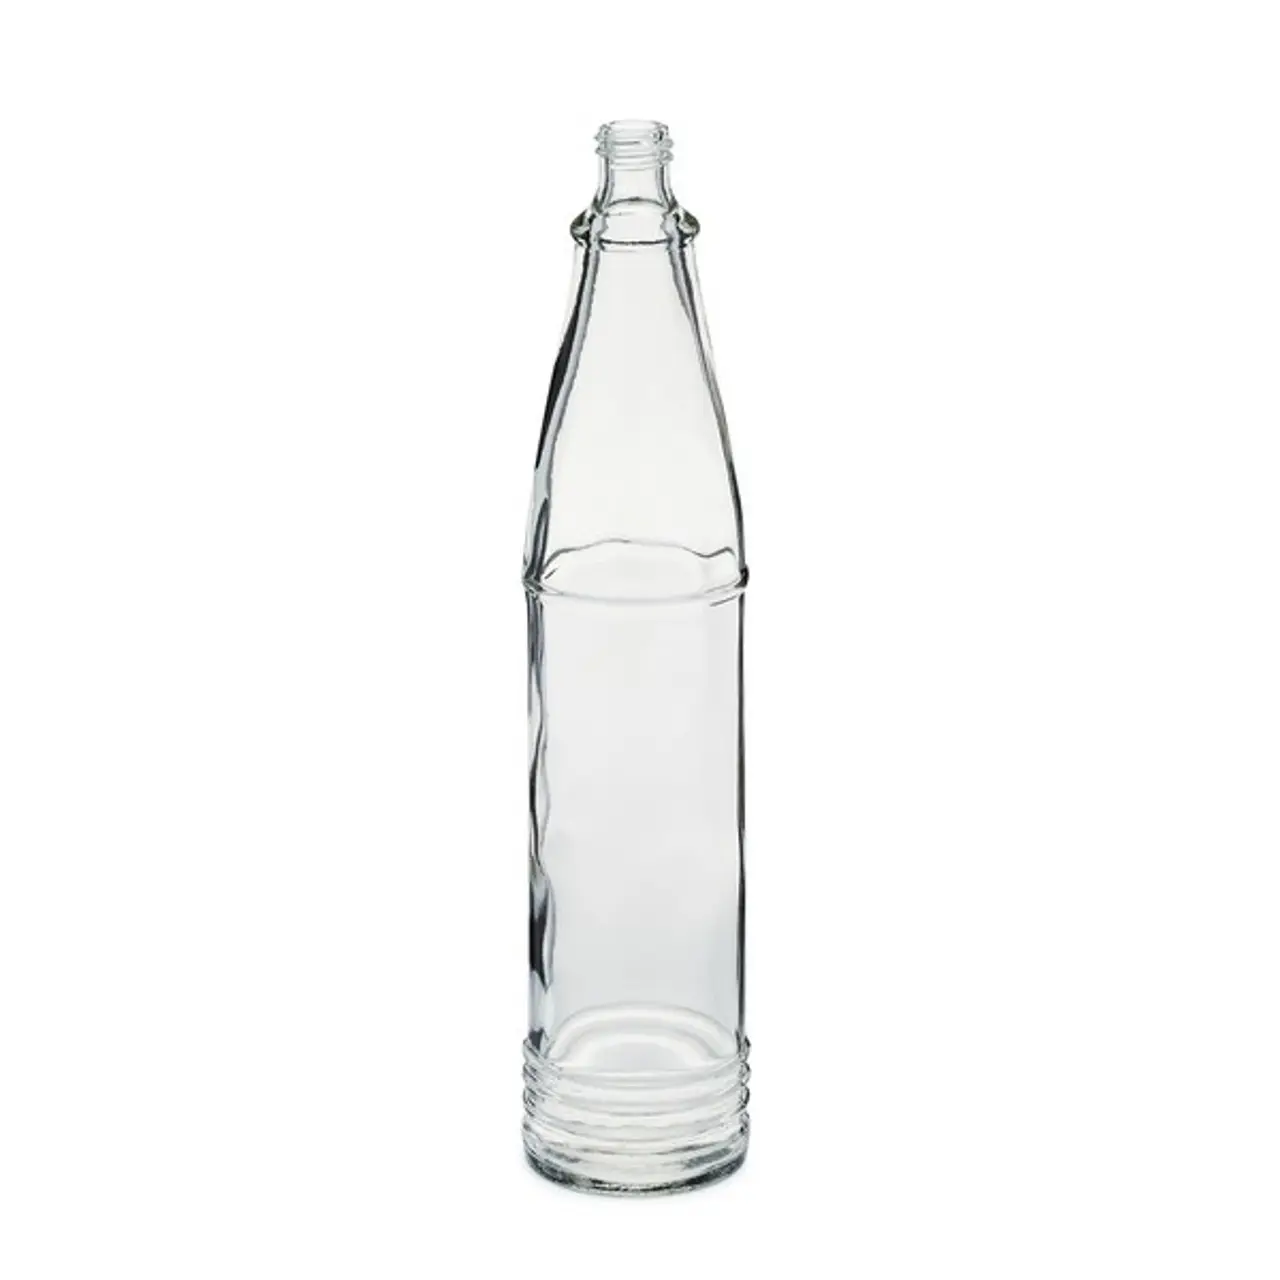 Botol Tabasco kaca kustom 3 oz kaca bening botol Woozy saus panas dengan pembukaan kecil 13-415 tutup plastik PP merah